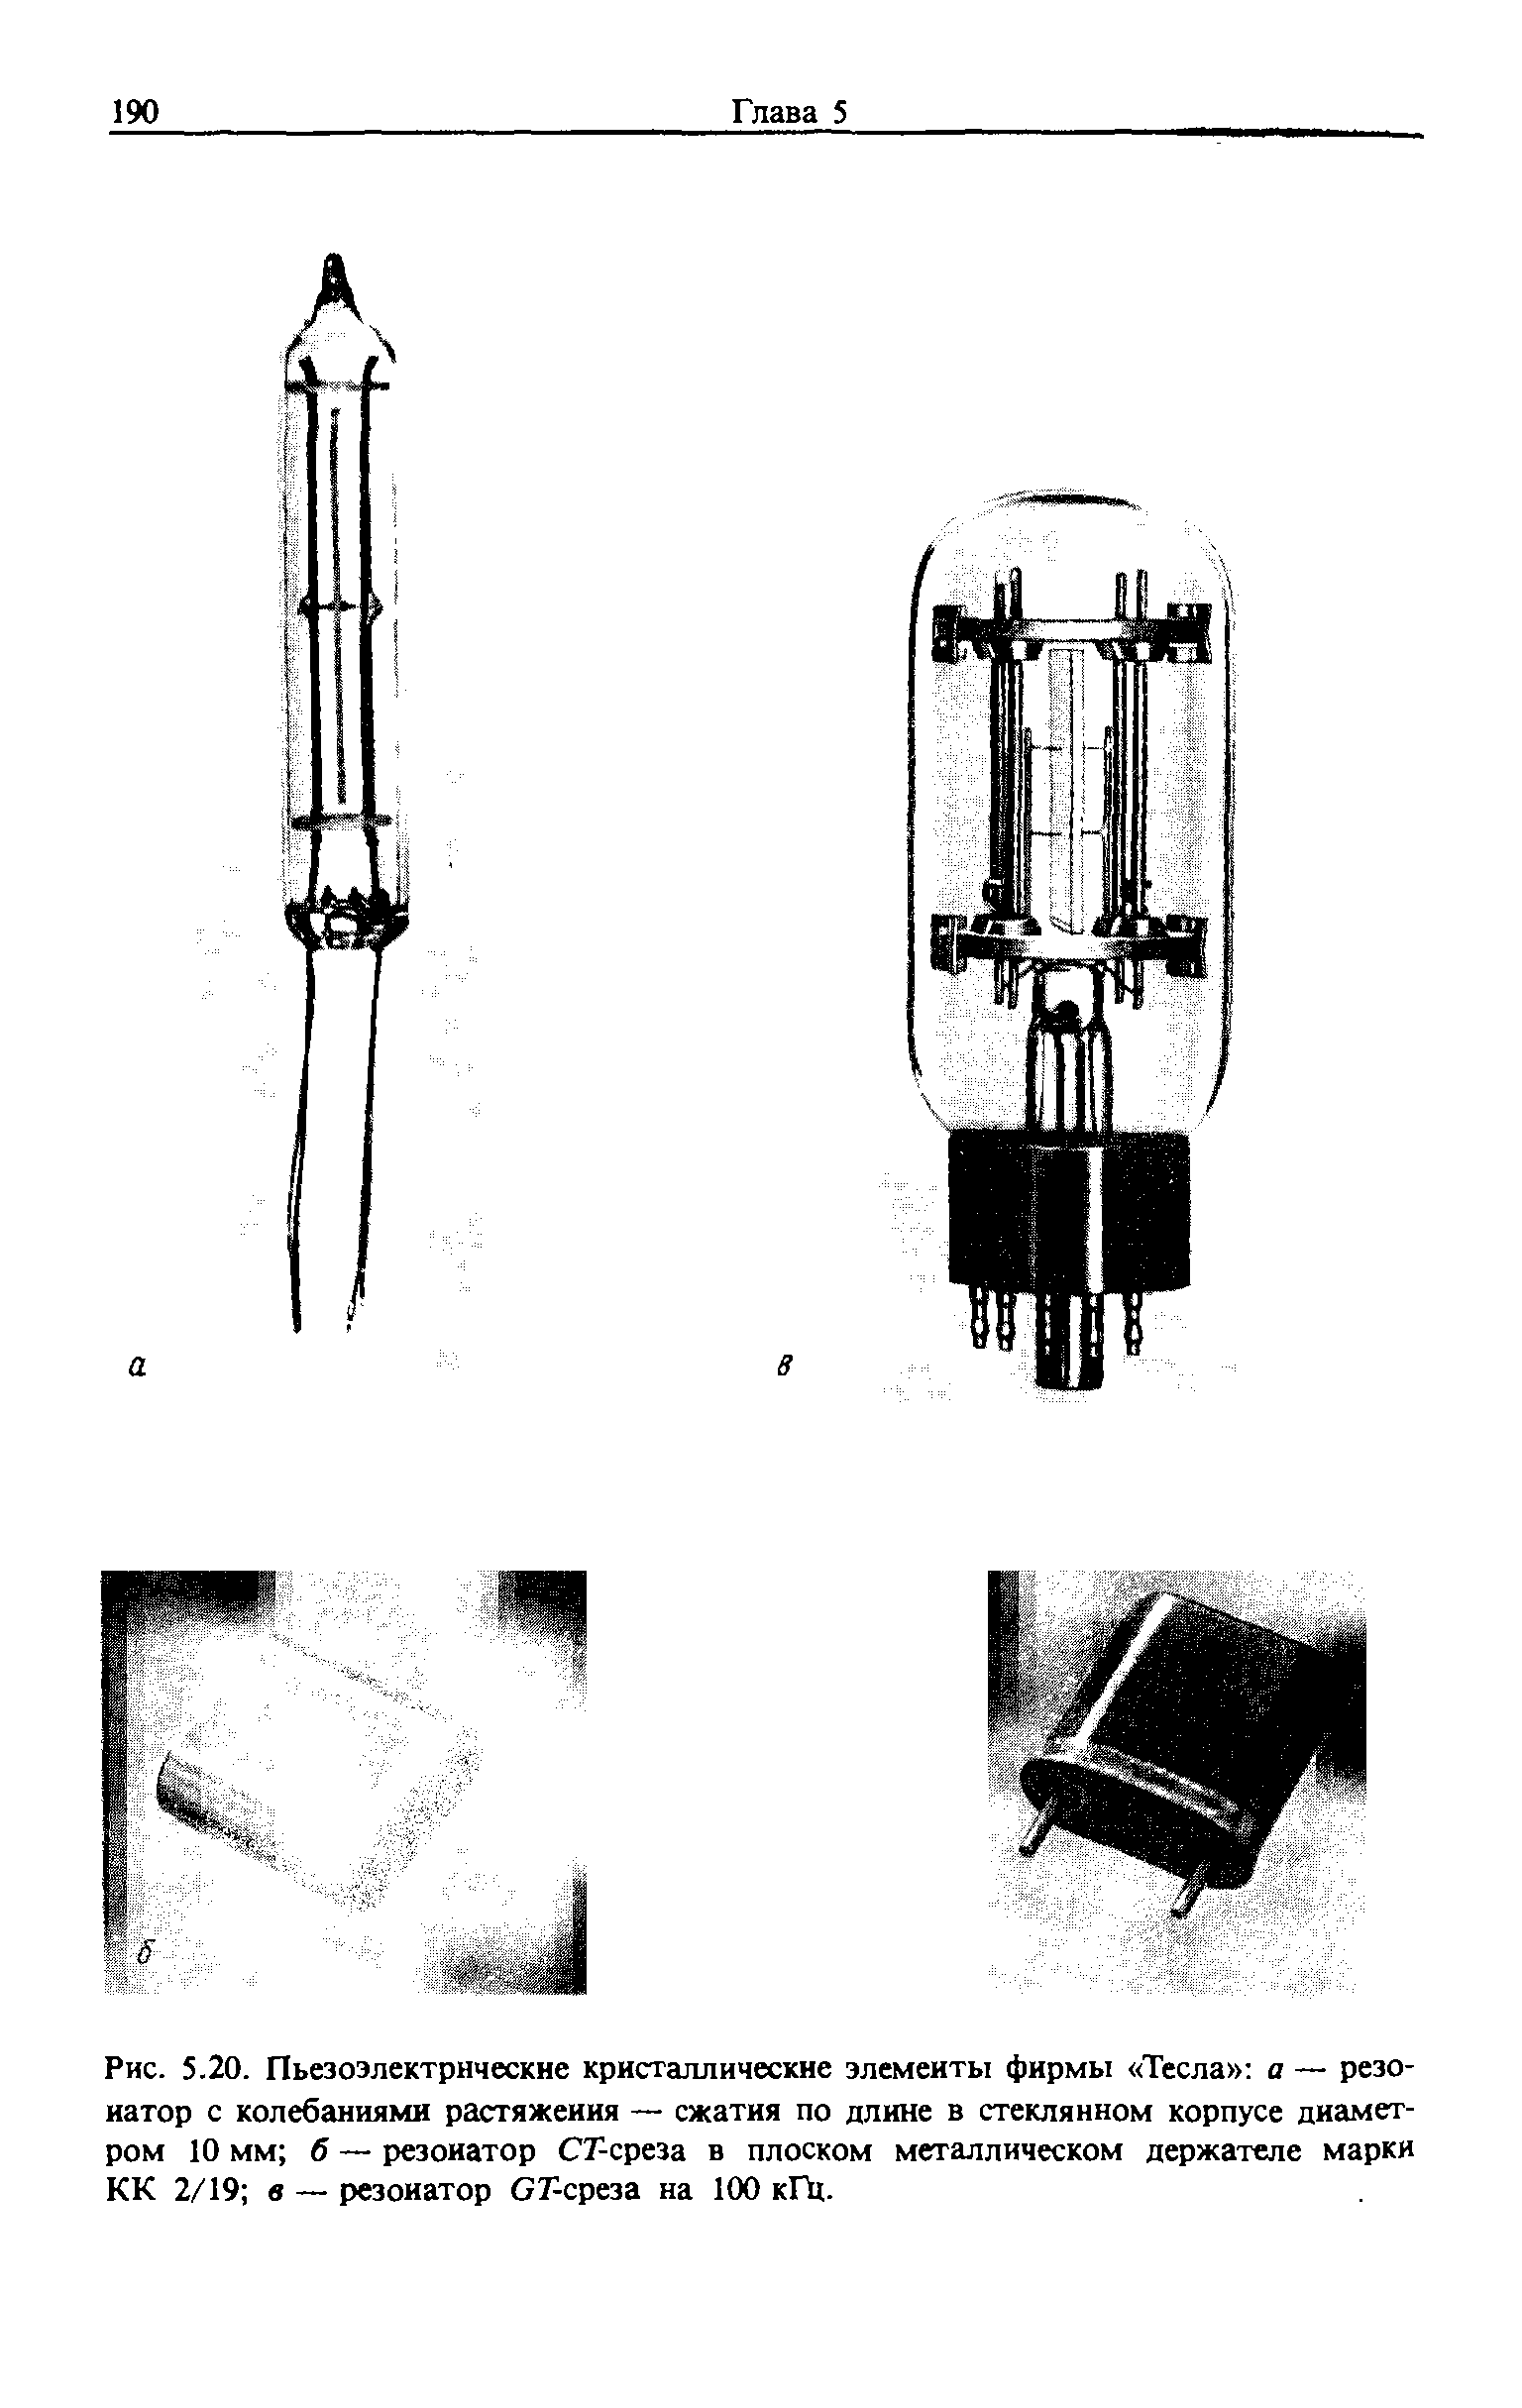 Рис. 5.20. Пьезоэлектрнческне кристаллические элементы фирмы Тесла а — резонатор с <a href="/info/191735">колебаниями растяжения</a> — сжатия по длине в стеклянном корпусе диаметром 10 мм б — резонатор СГ-среза в плоском металлическом держателе марки КК 2/19 в — резонатор СГ-среза на 100 кП1.
